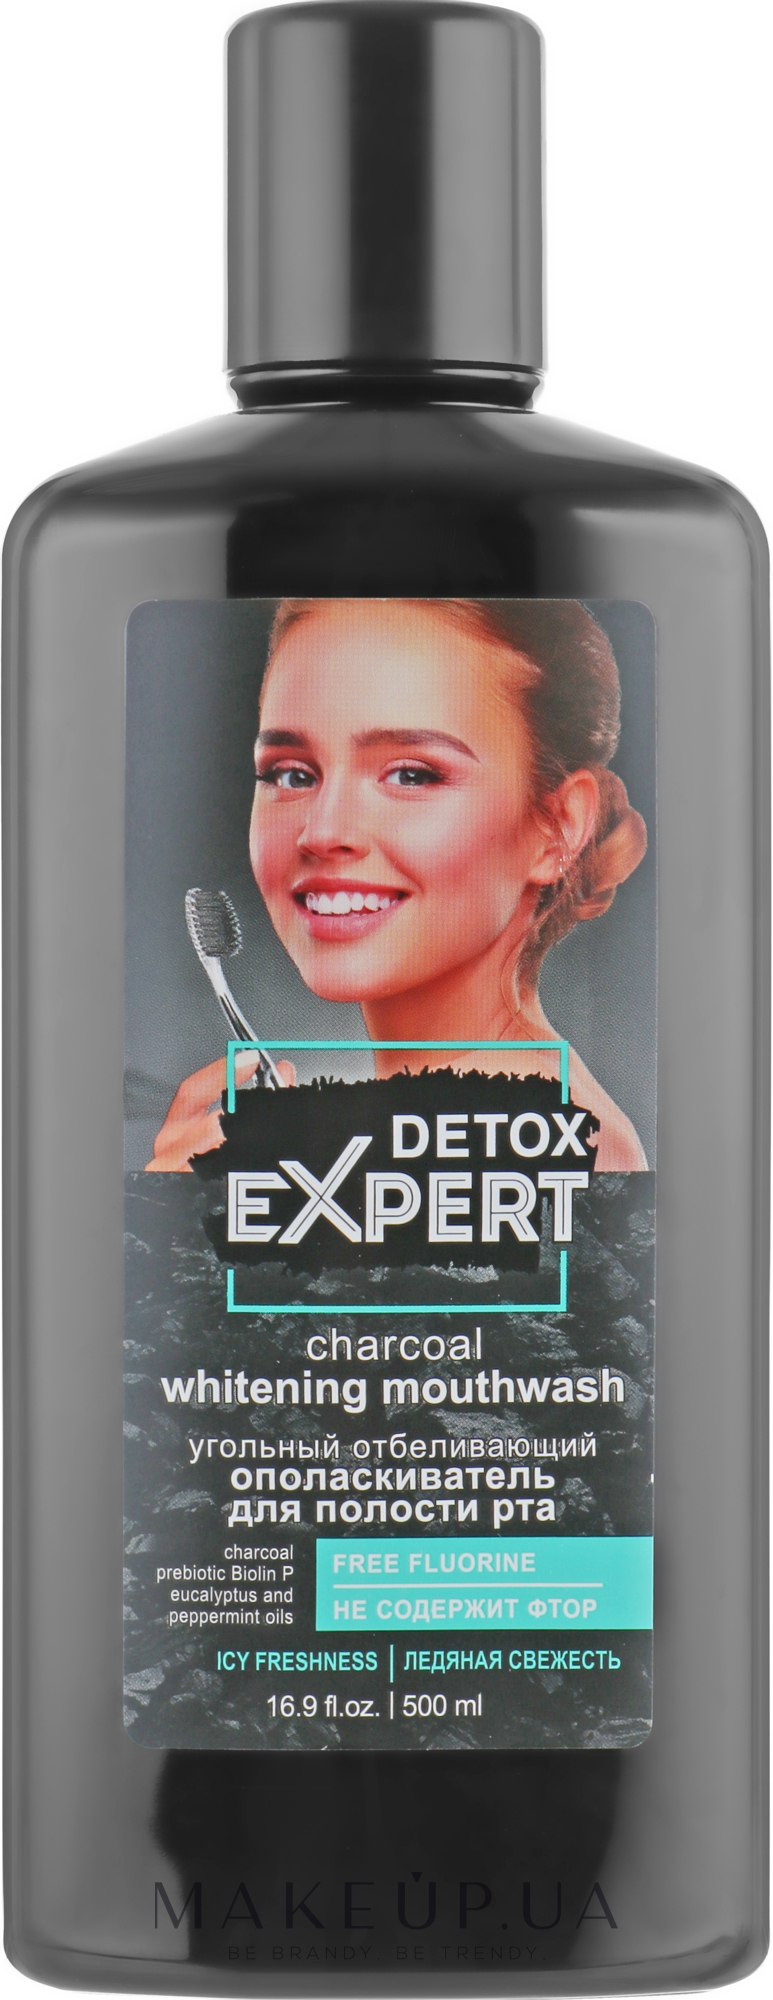 Угольный отбеливающий ополаскиватель для полости рта - Detox Expert Charcoal Whitening Mouthwash — фото 500ml